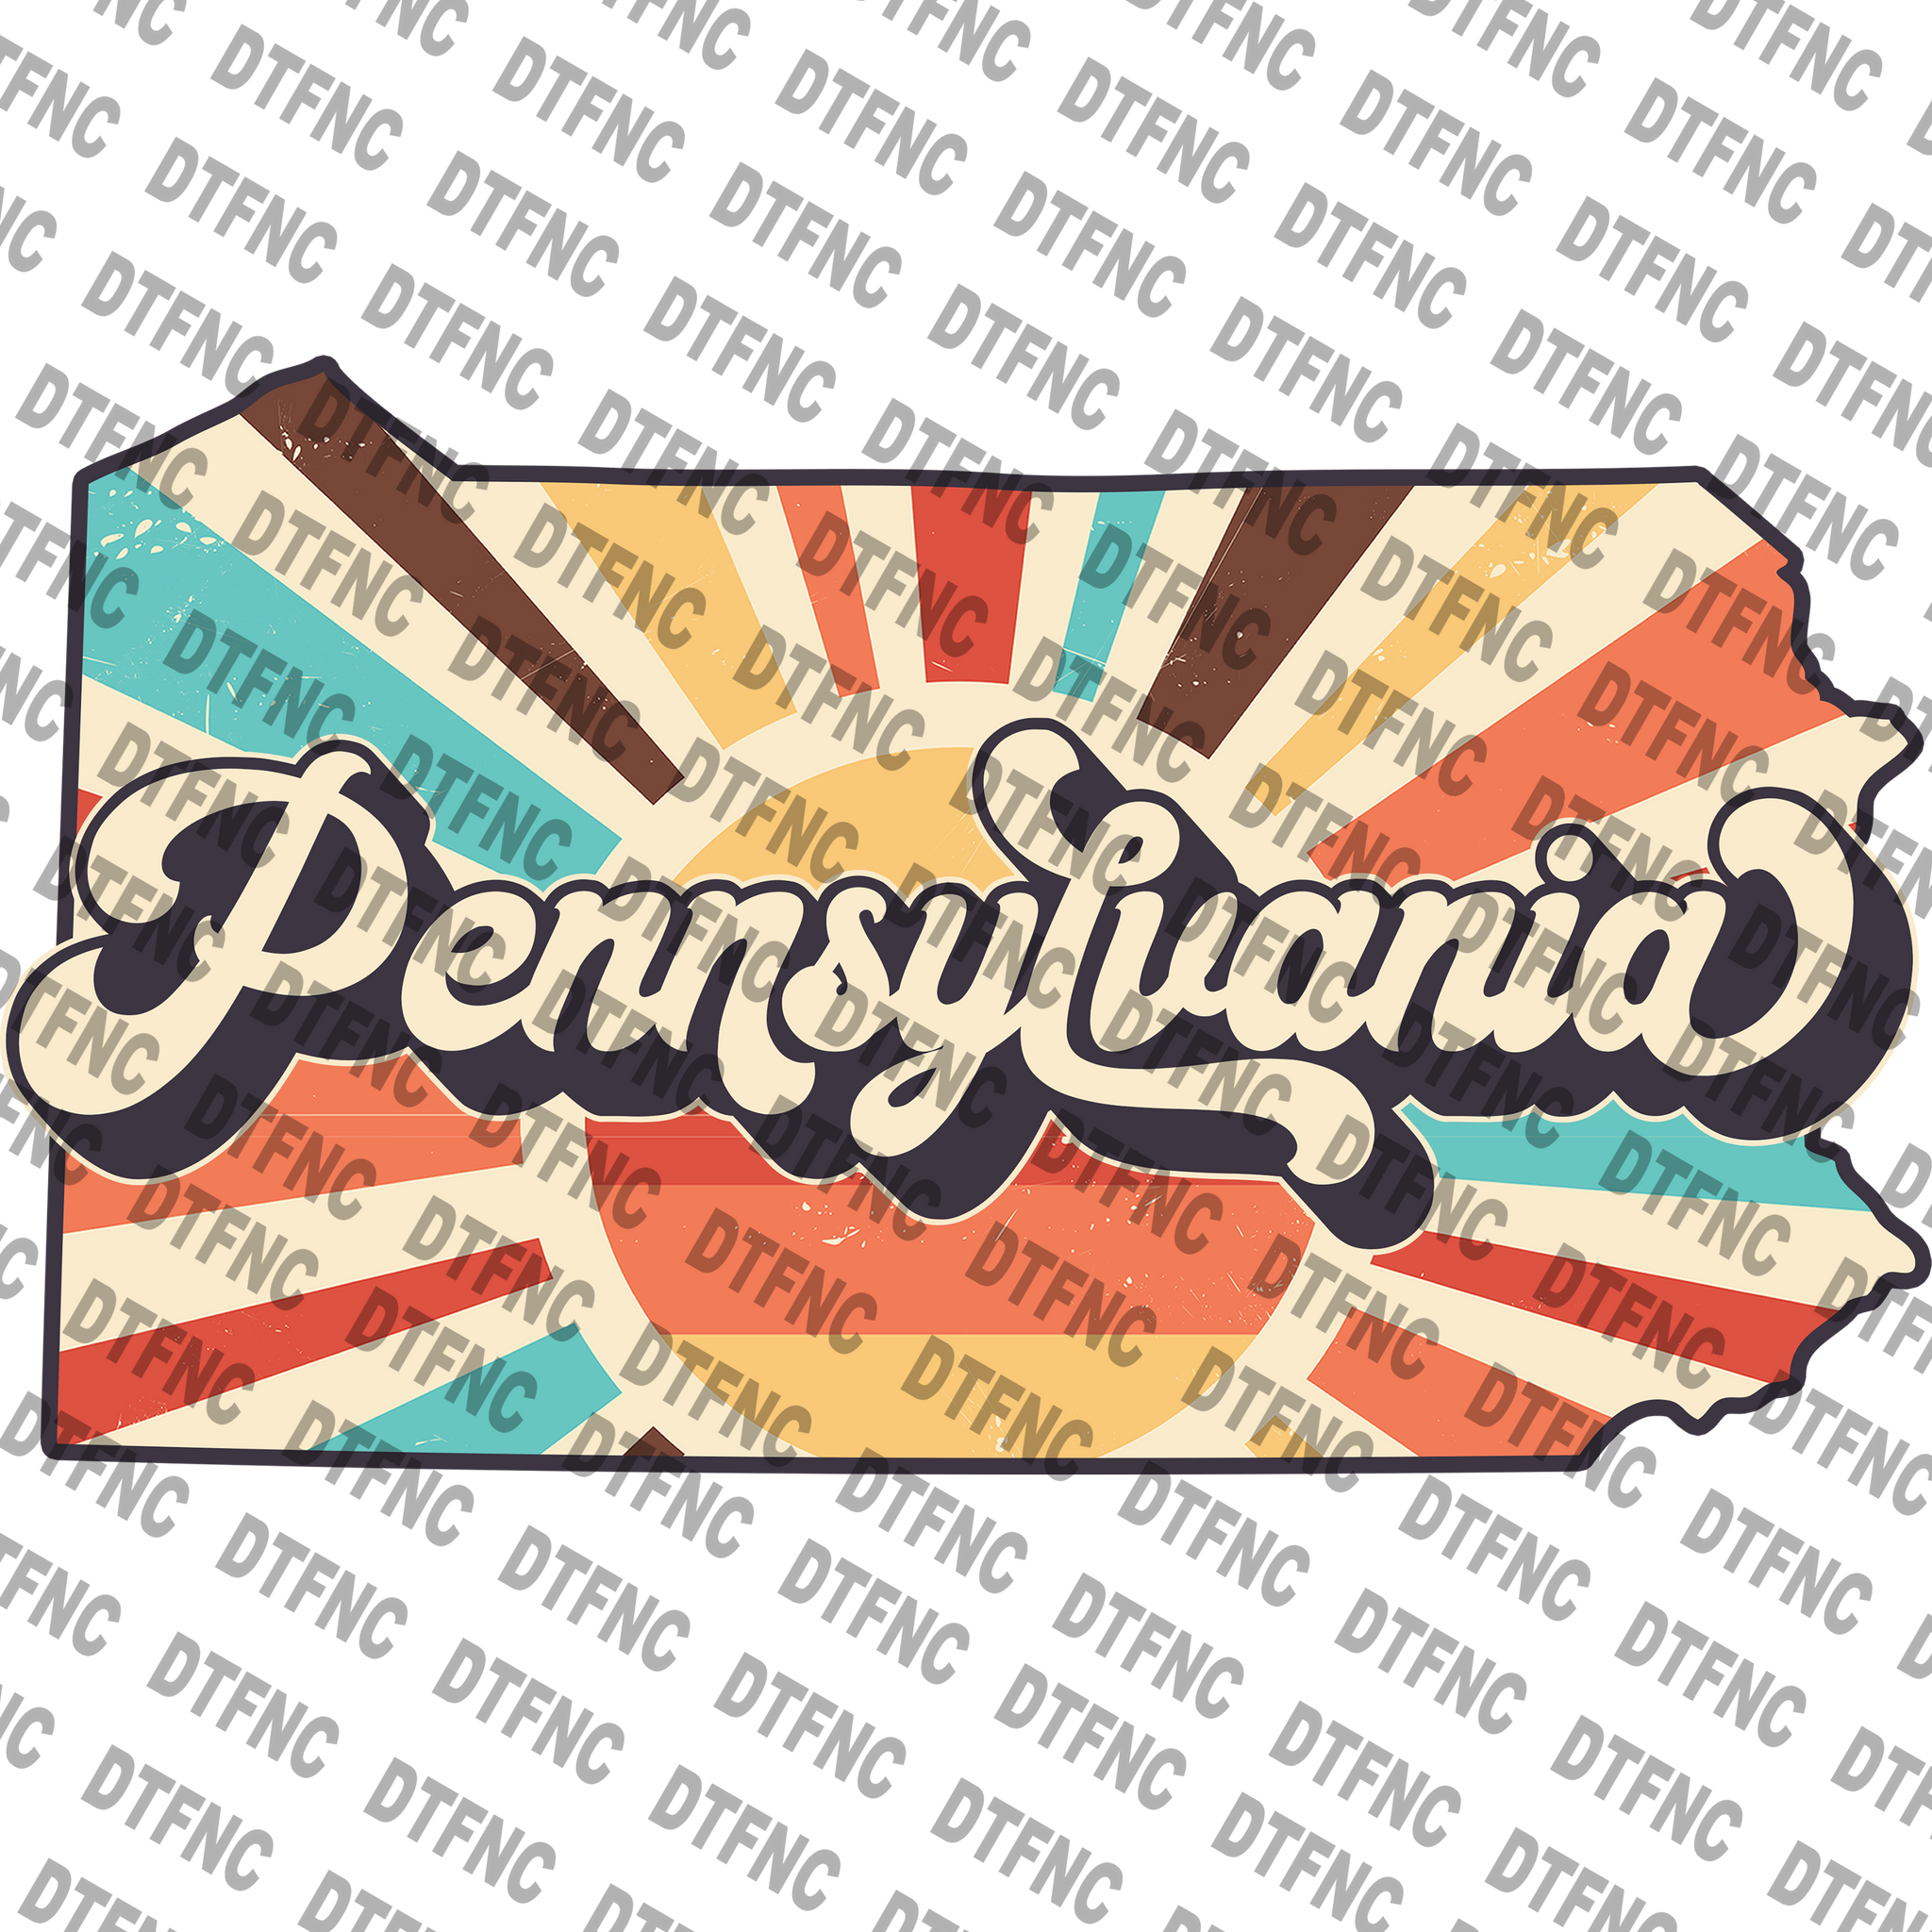 State - Pennsylvania